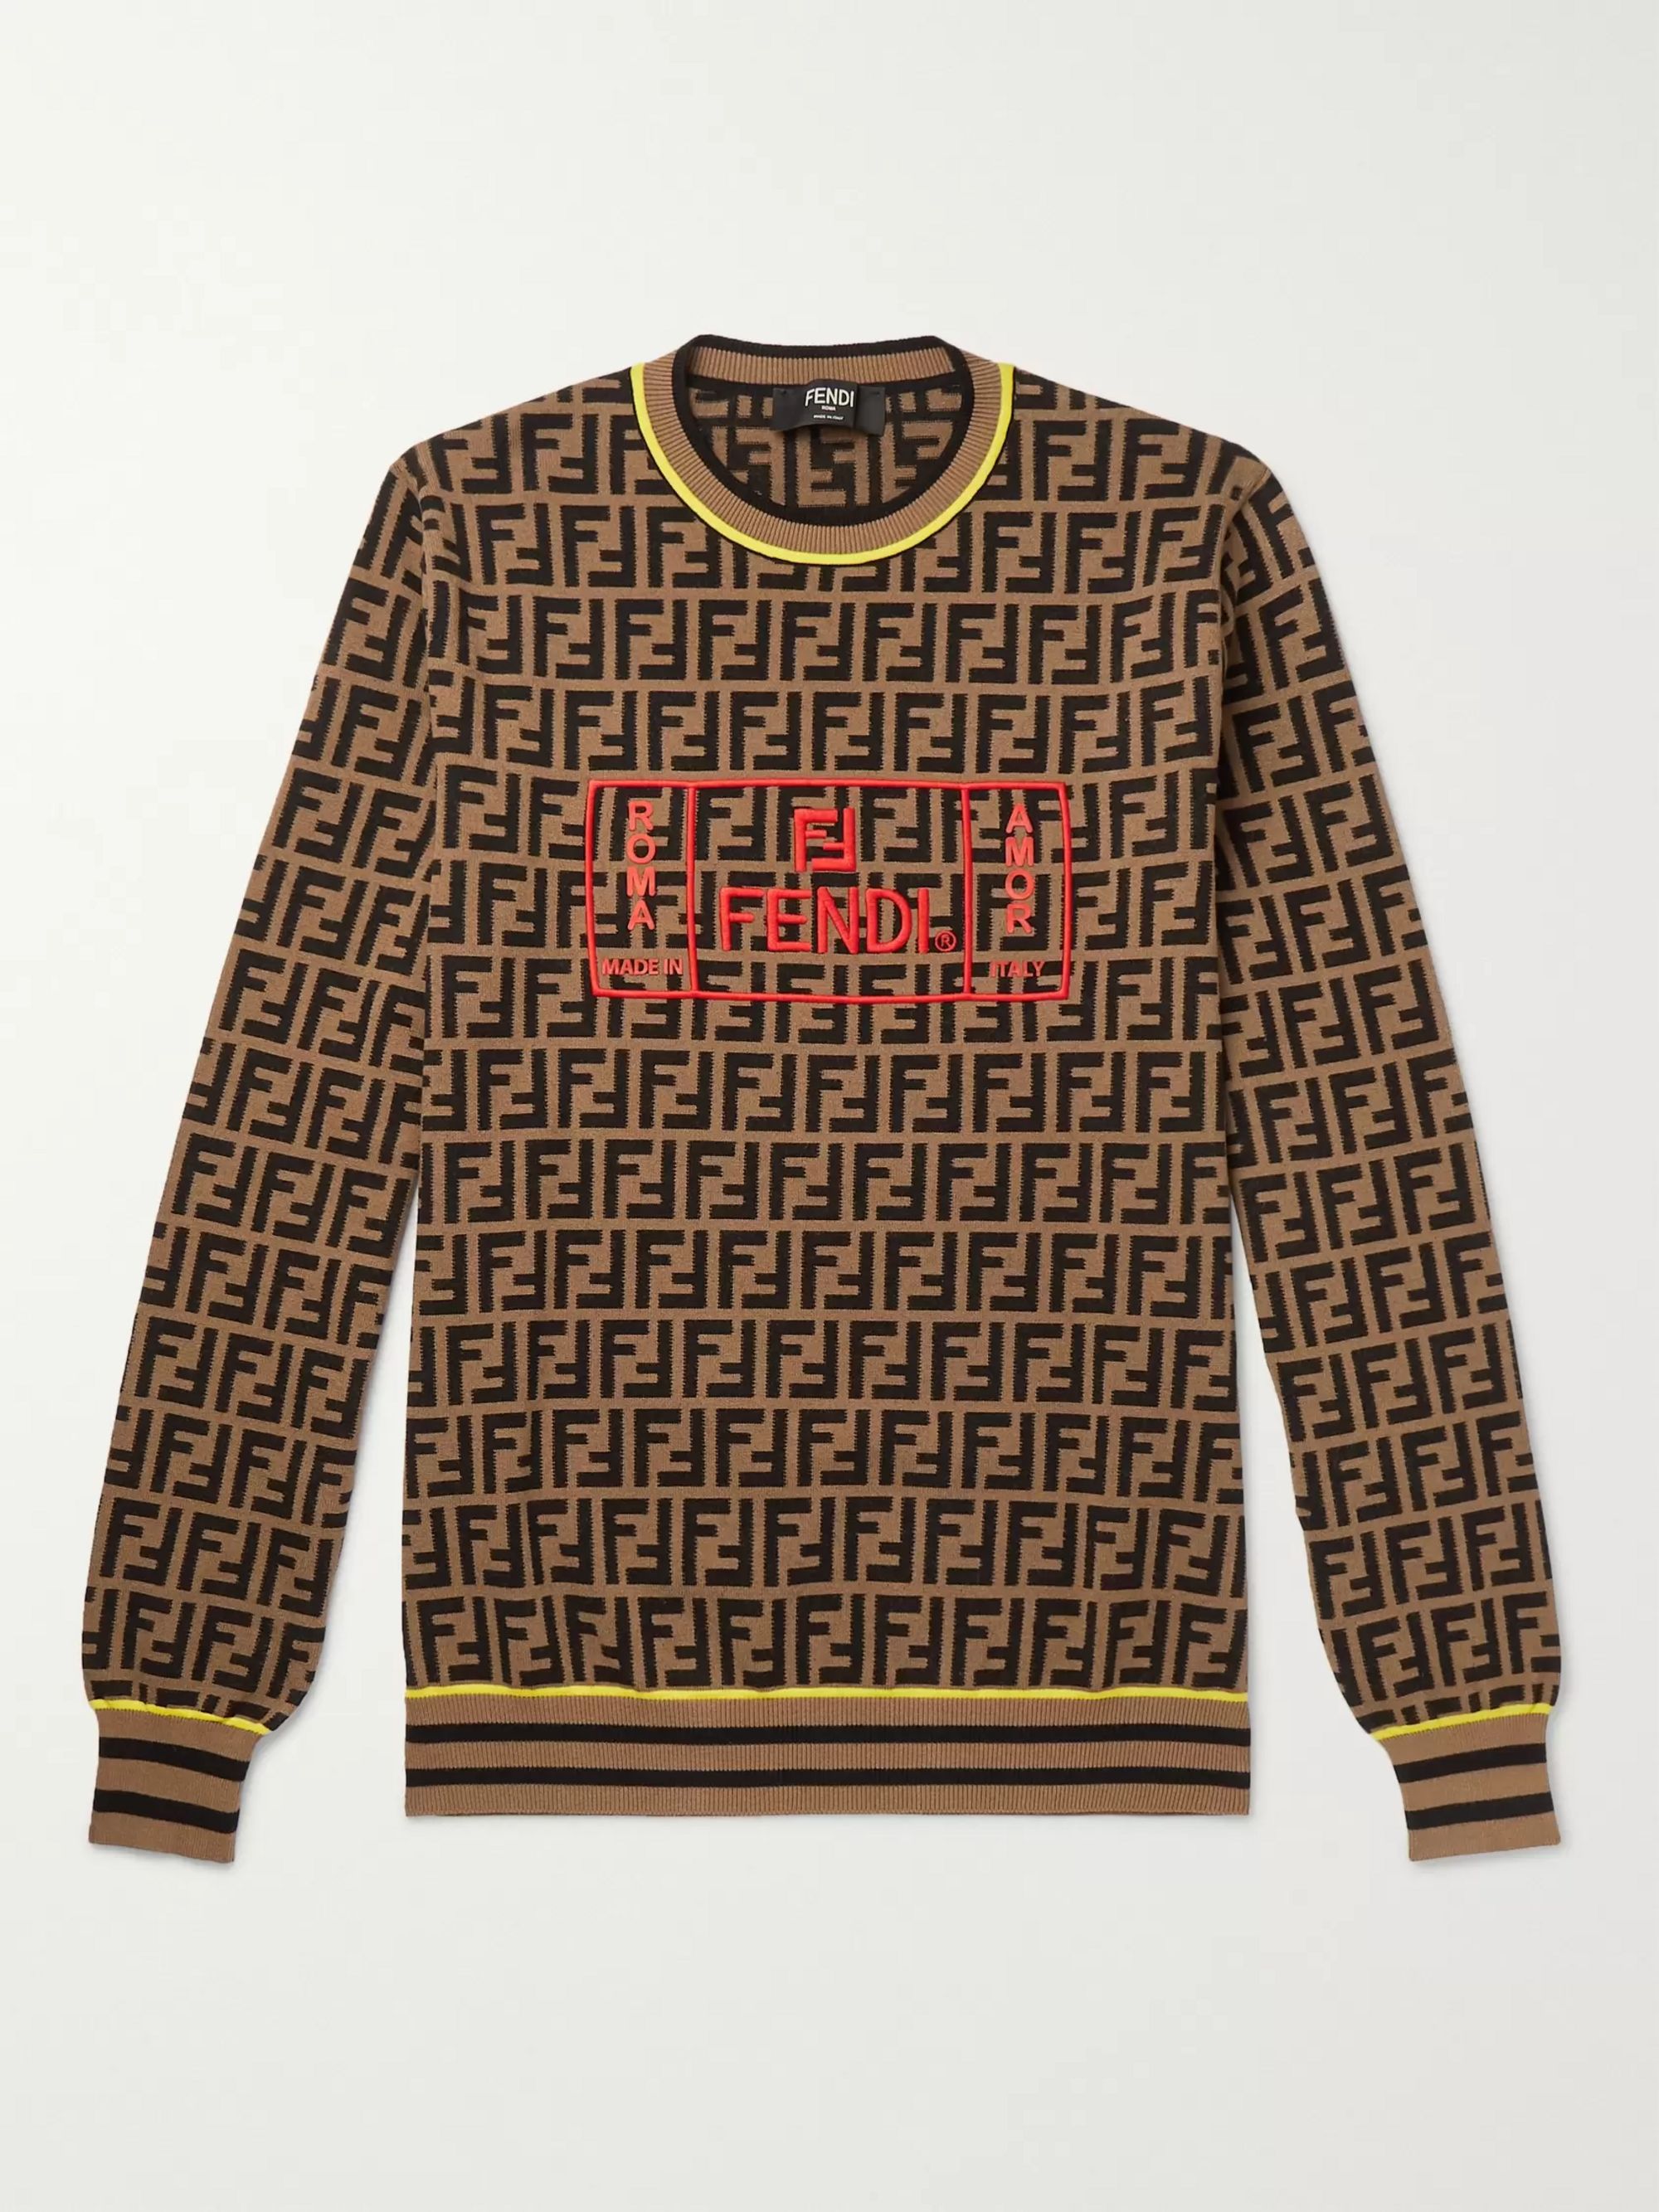 fendi knit sweater off 61% - www 